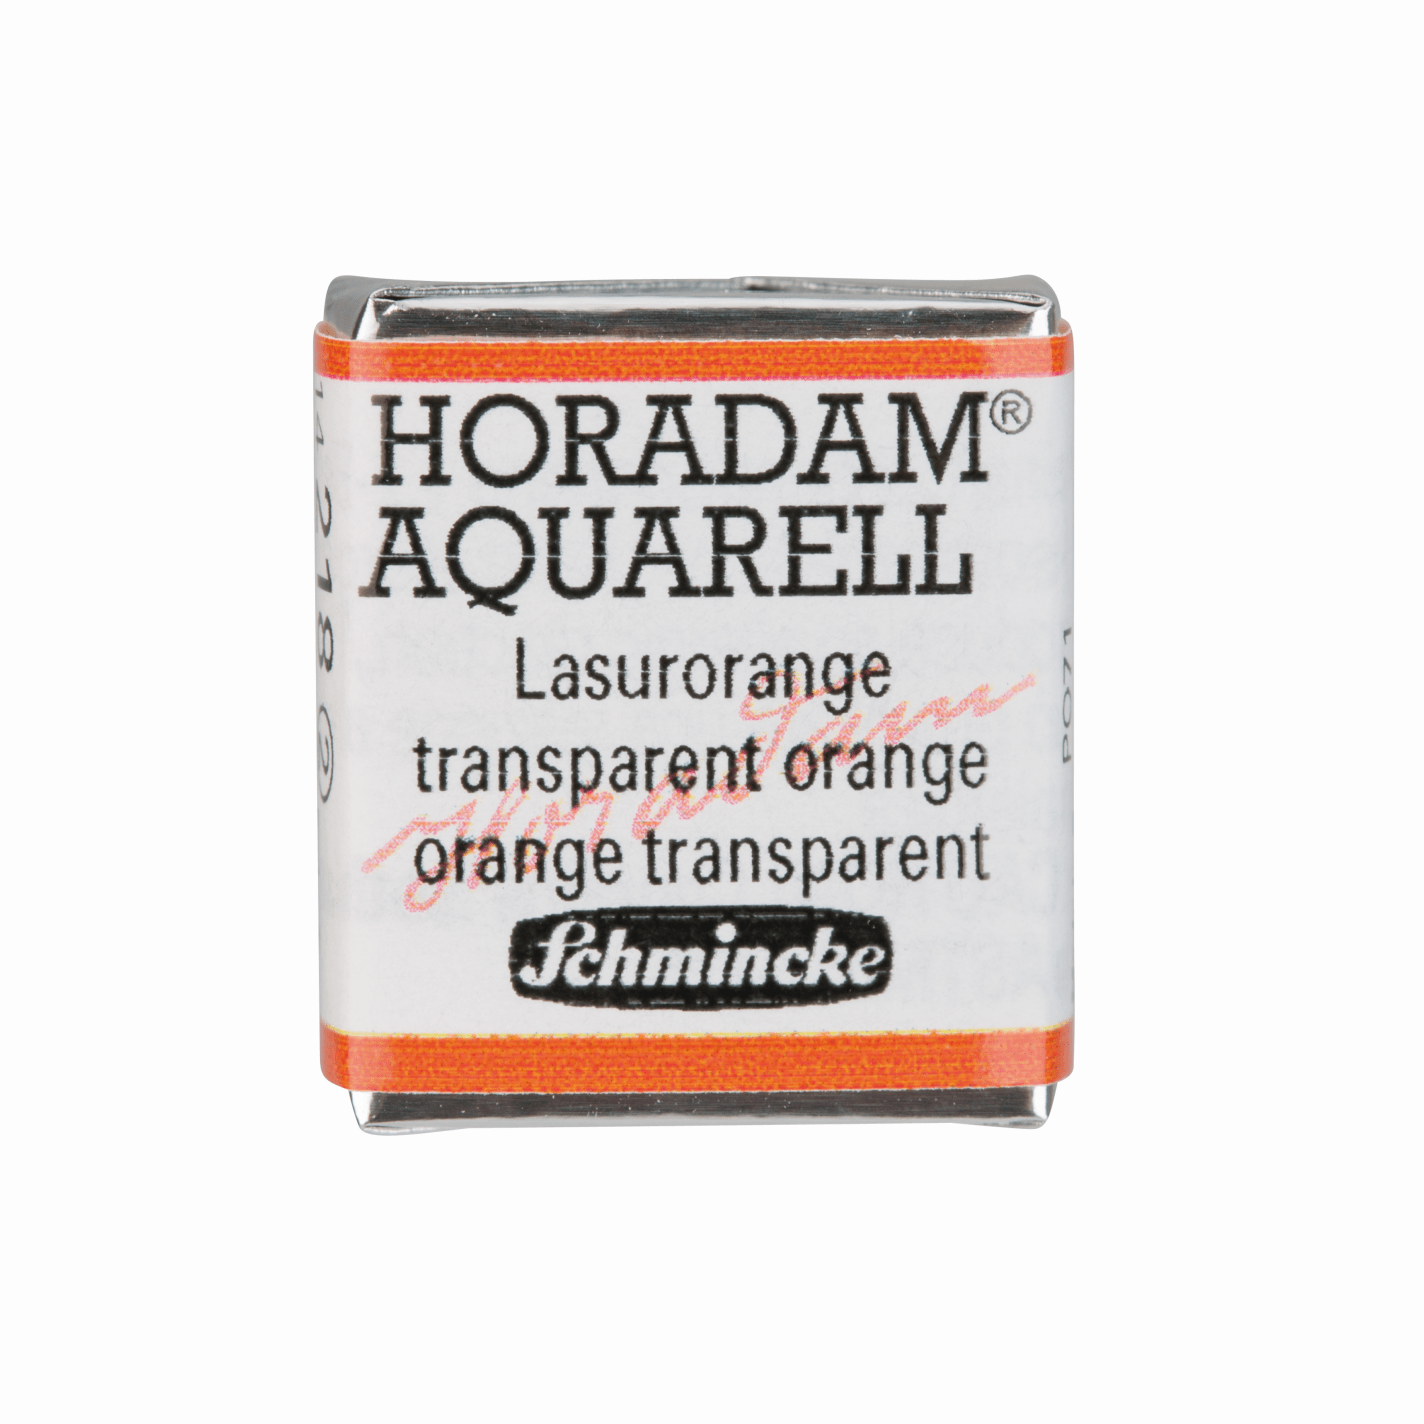 Schmincke Horadam Aquarell pans 1/2 pan Transparent Orange